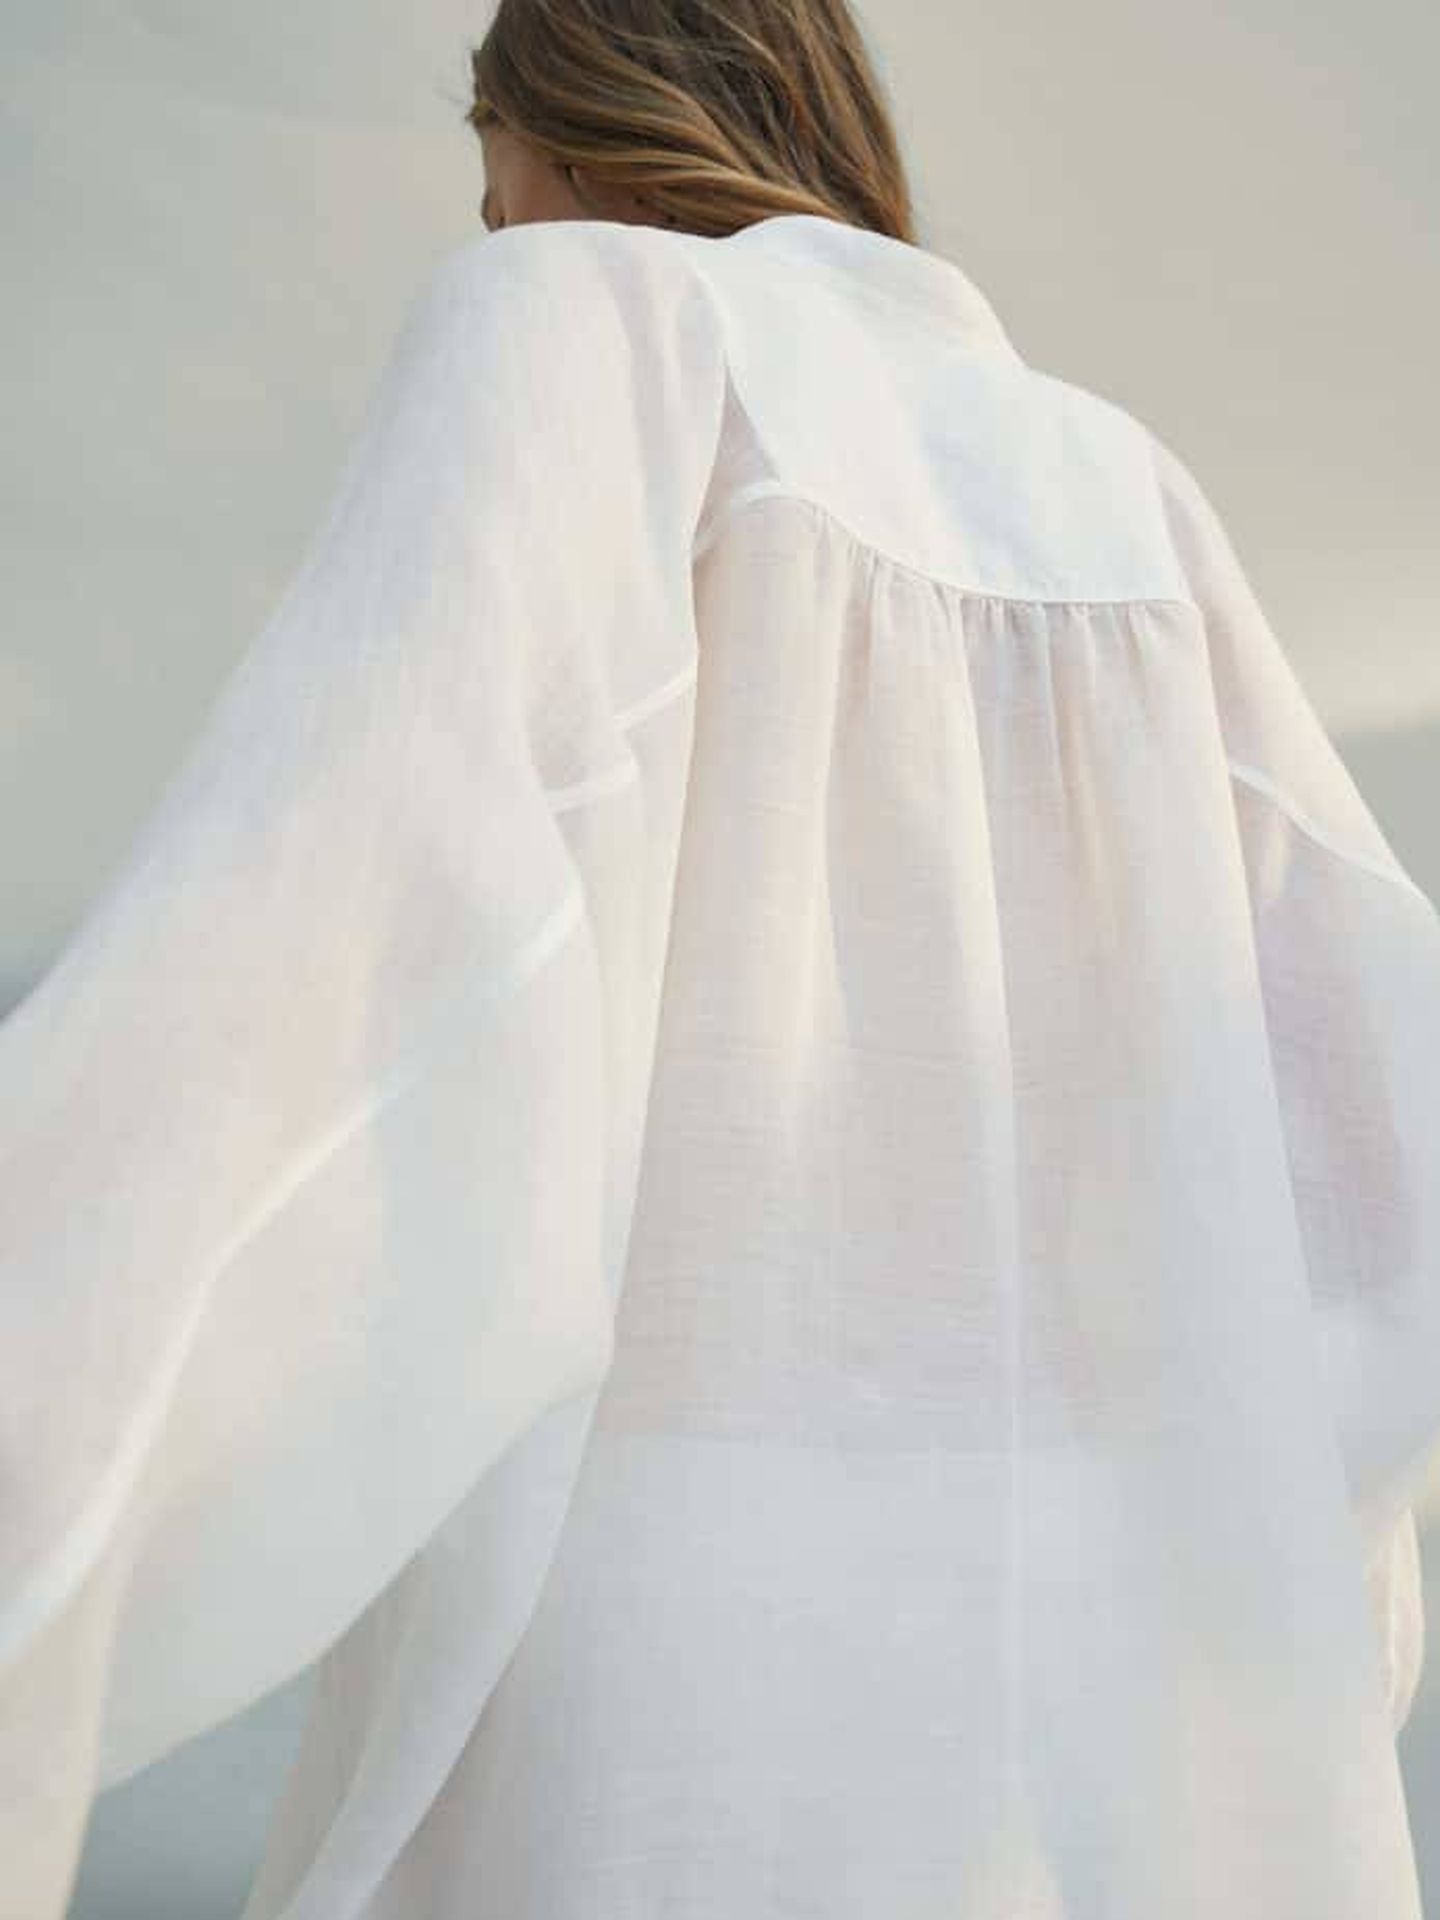 Camisa blanca de Massimo Dutti. (Cortesía)